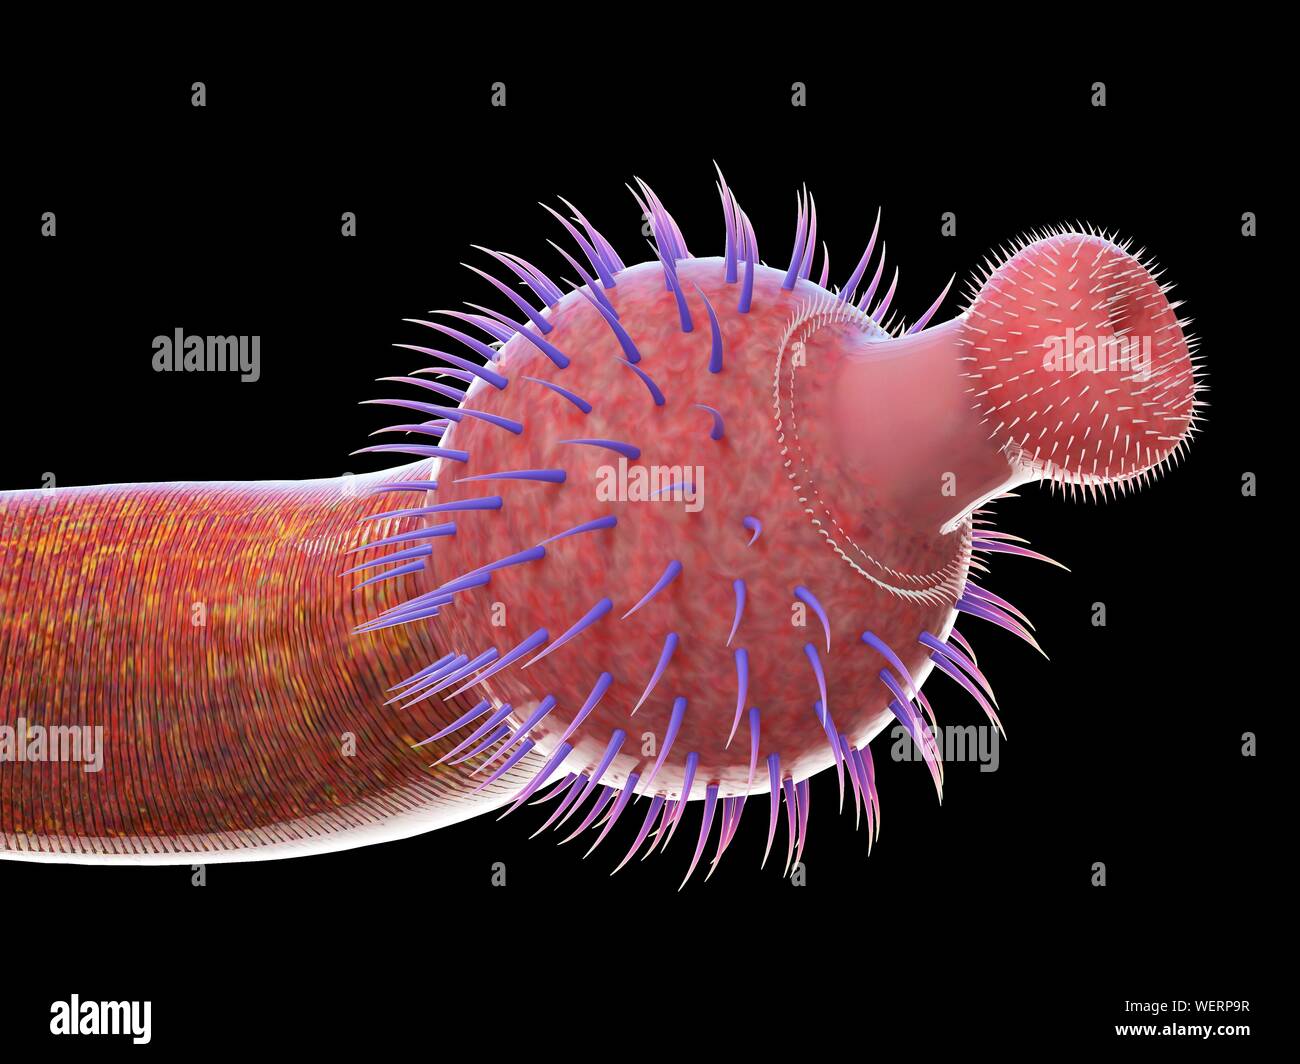 Ottoia marine worm, illustration Stock Photo